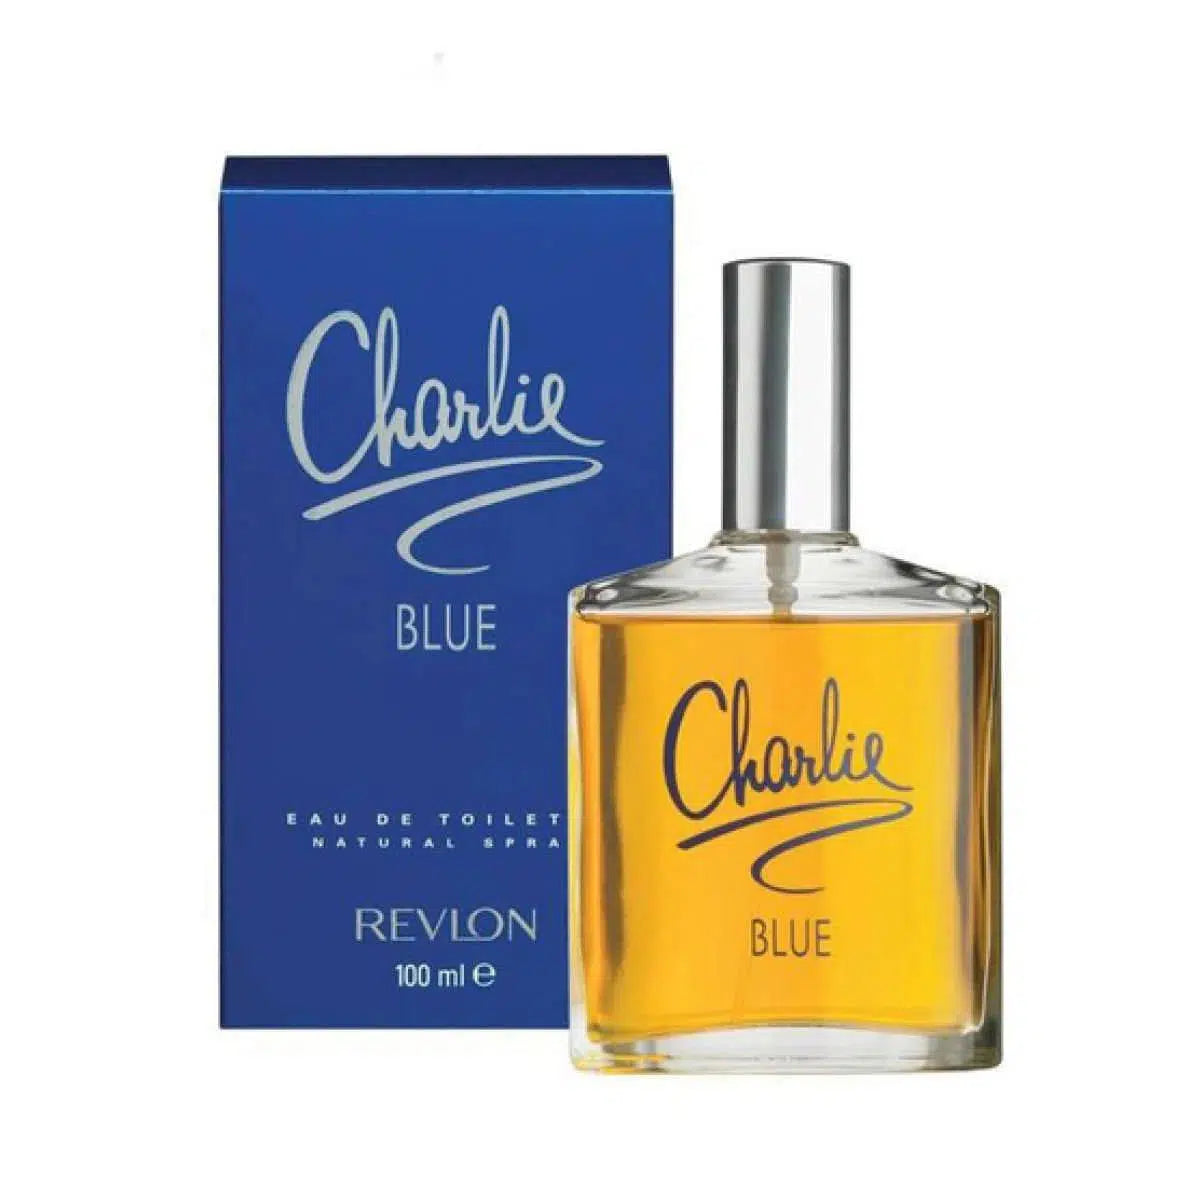 Revlon Charlie BLUE EDT for Women 100ml - Perfume Philippines